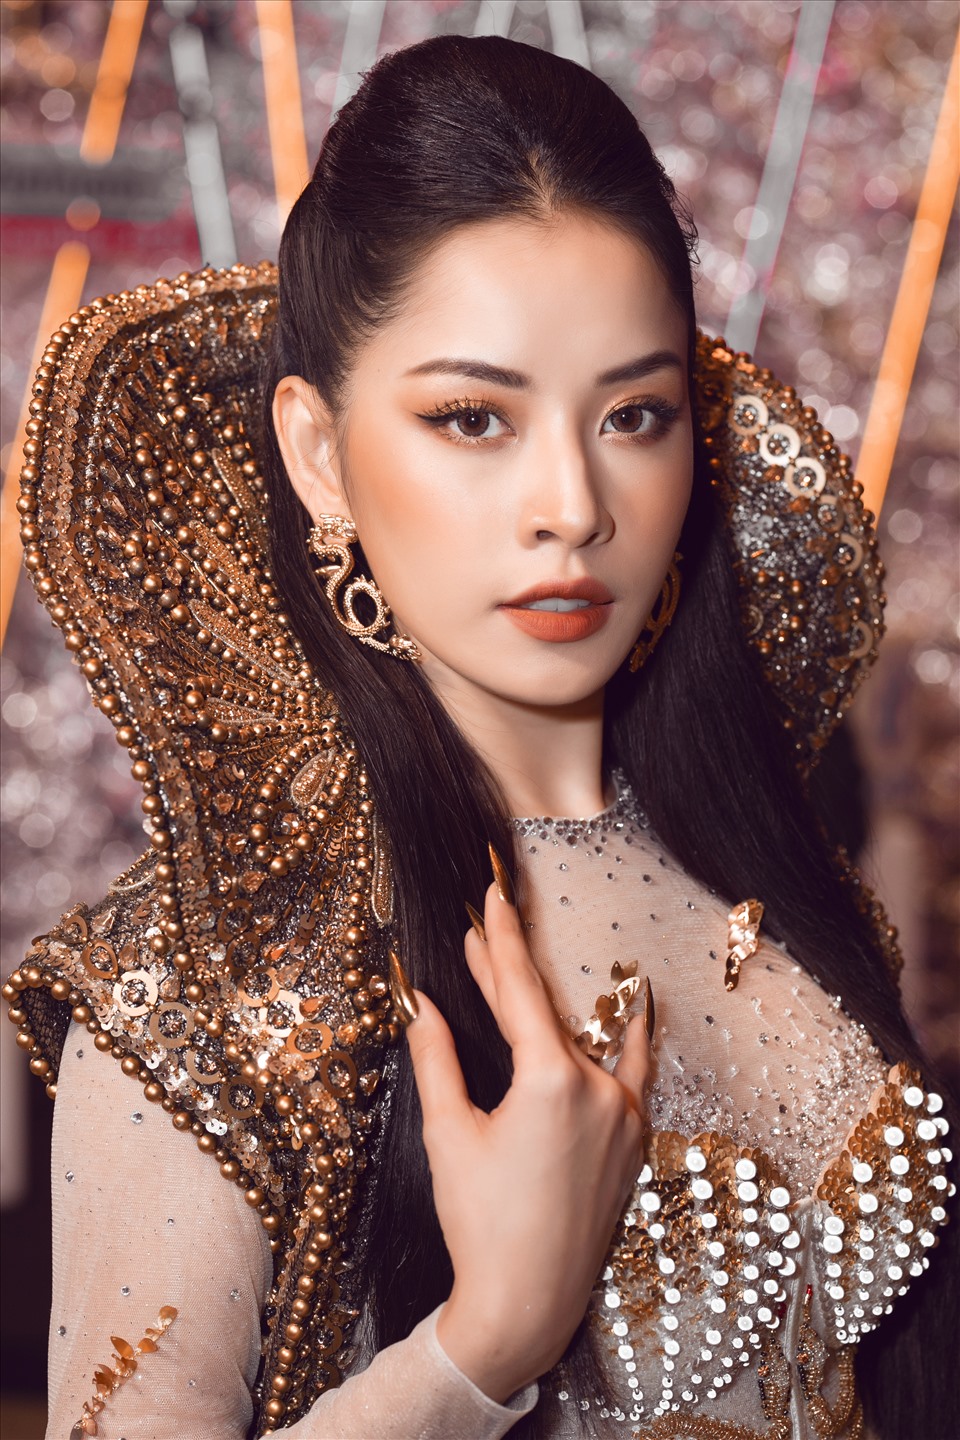 Ca sĩ Chi Pu, hoa hậu H’hen Niê và hoa hậu Đỗ Mỹ Linh đầy cuốn hút với vẻ đẹp “nữ thần” khi khoác lên mình thiết kế Haute Couture sang trọng nằm trong BST “The Valley Of Goddes” của NTK Đỗ Long.